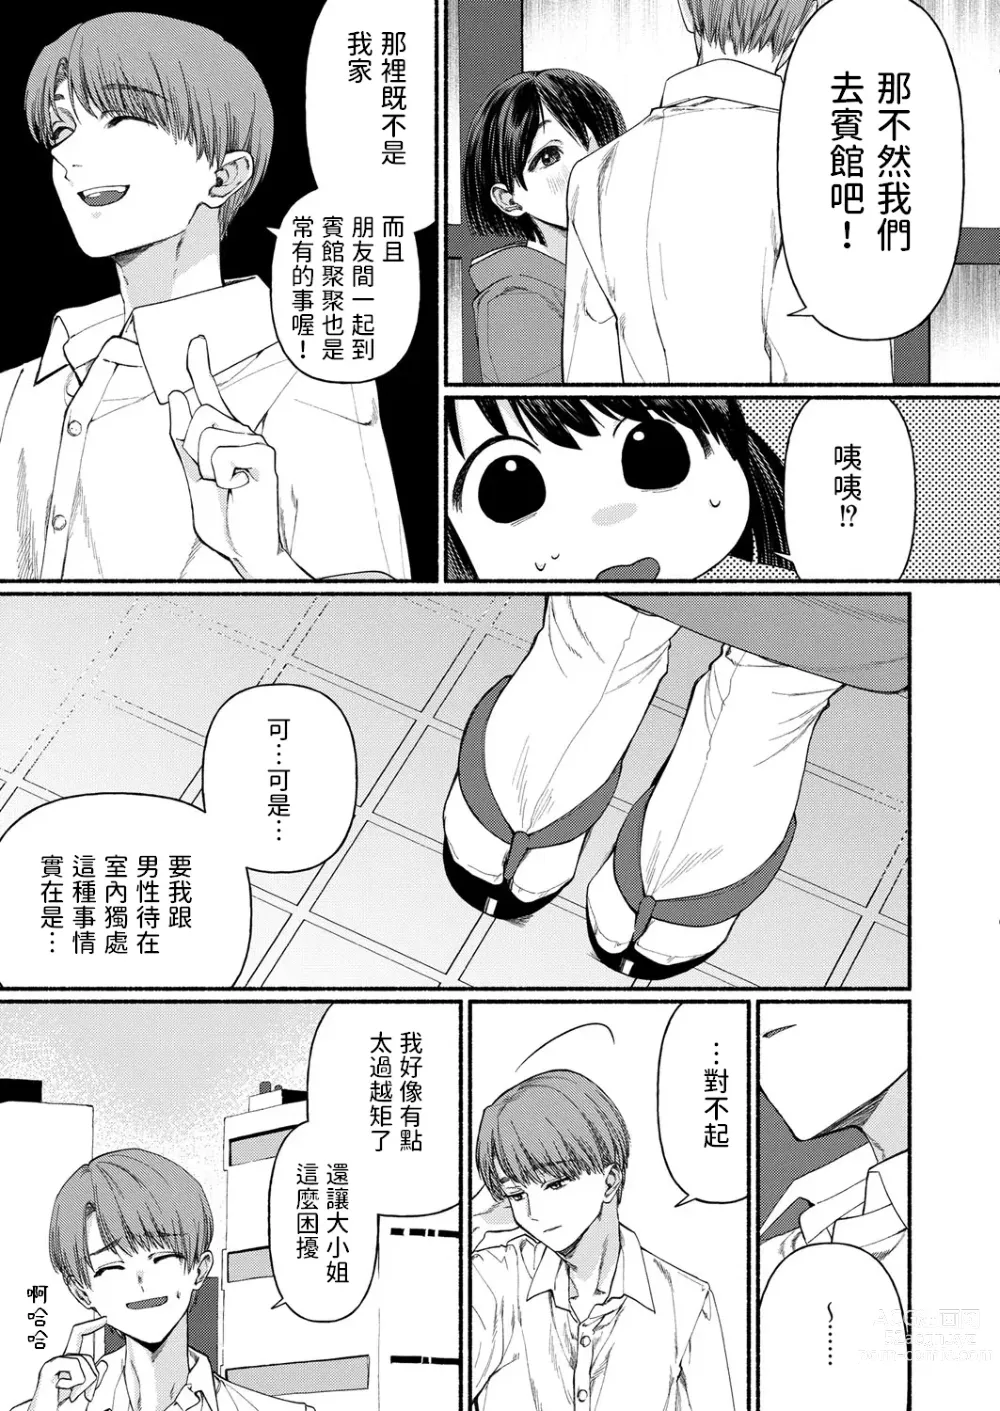 Page 5 of manga Hakoiri Musume wa Pet ni Ochiru -Zenpen-